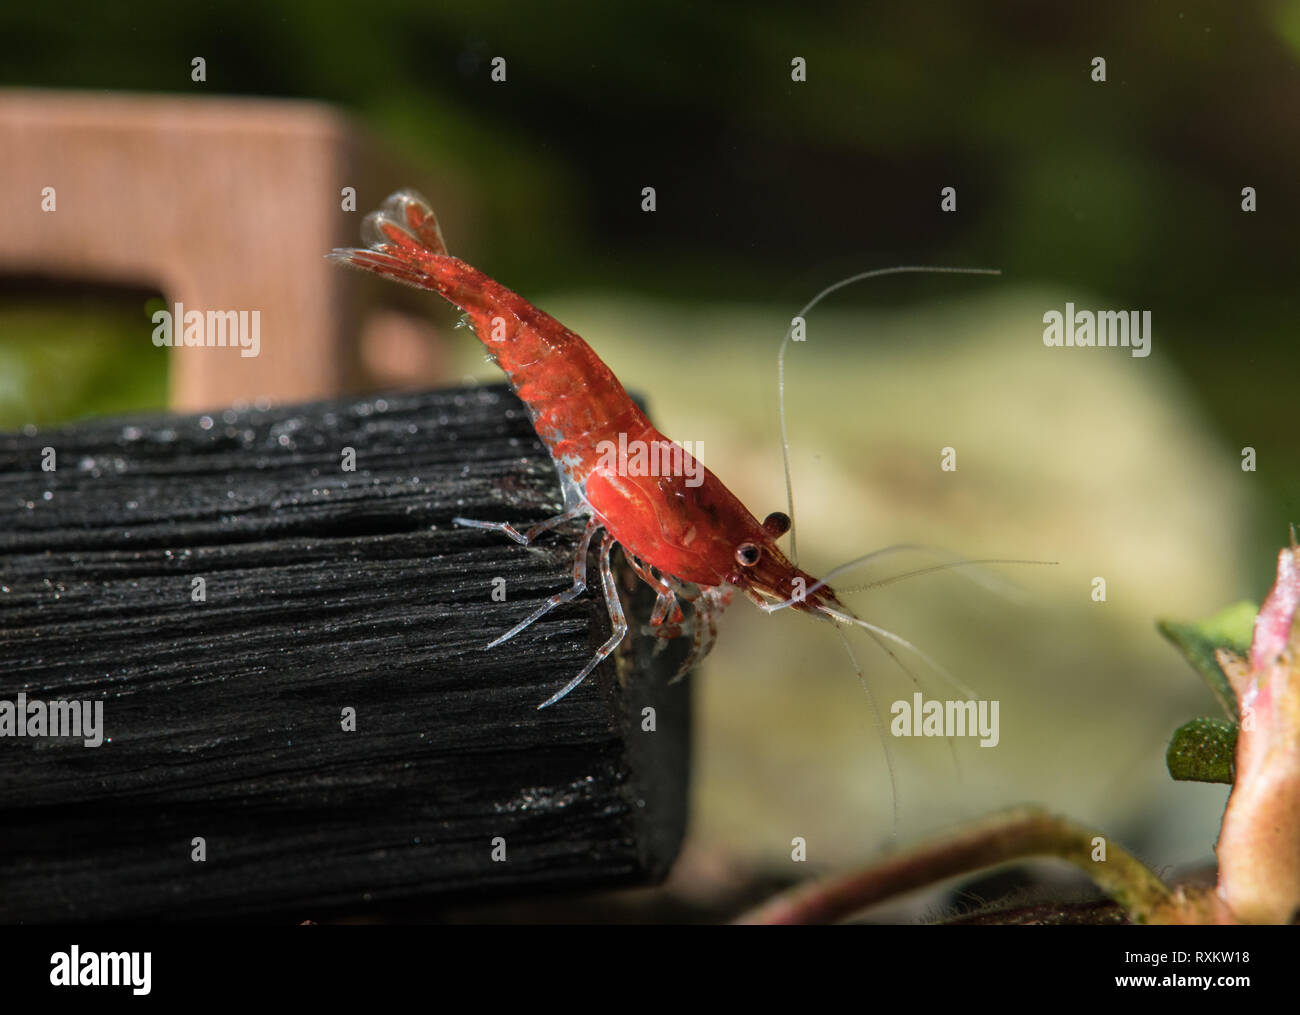 Cerise rouge (crevettes neocaridina davidi) debout sur un charbon stick en aquarium d'eau douce Banque D'Images